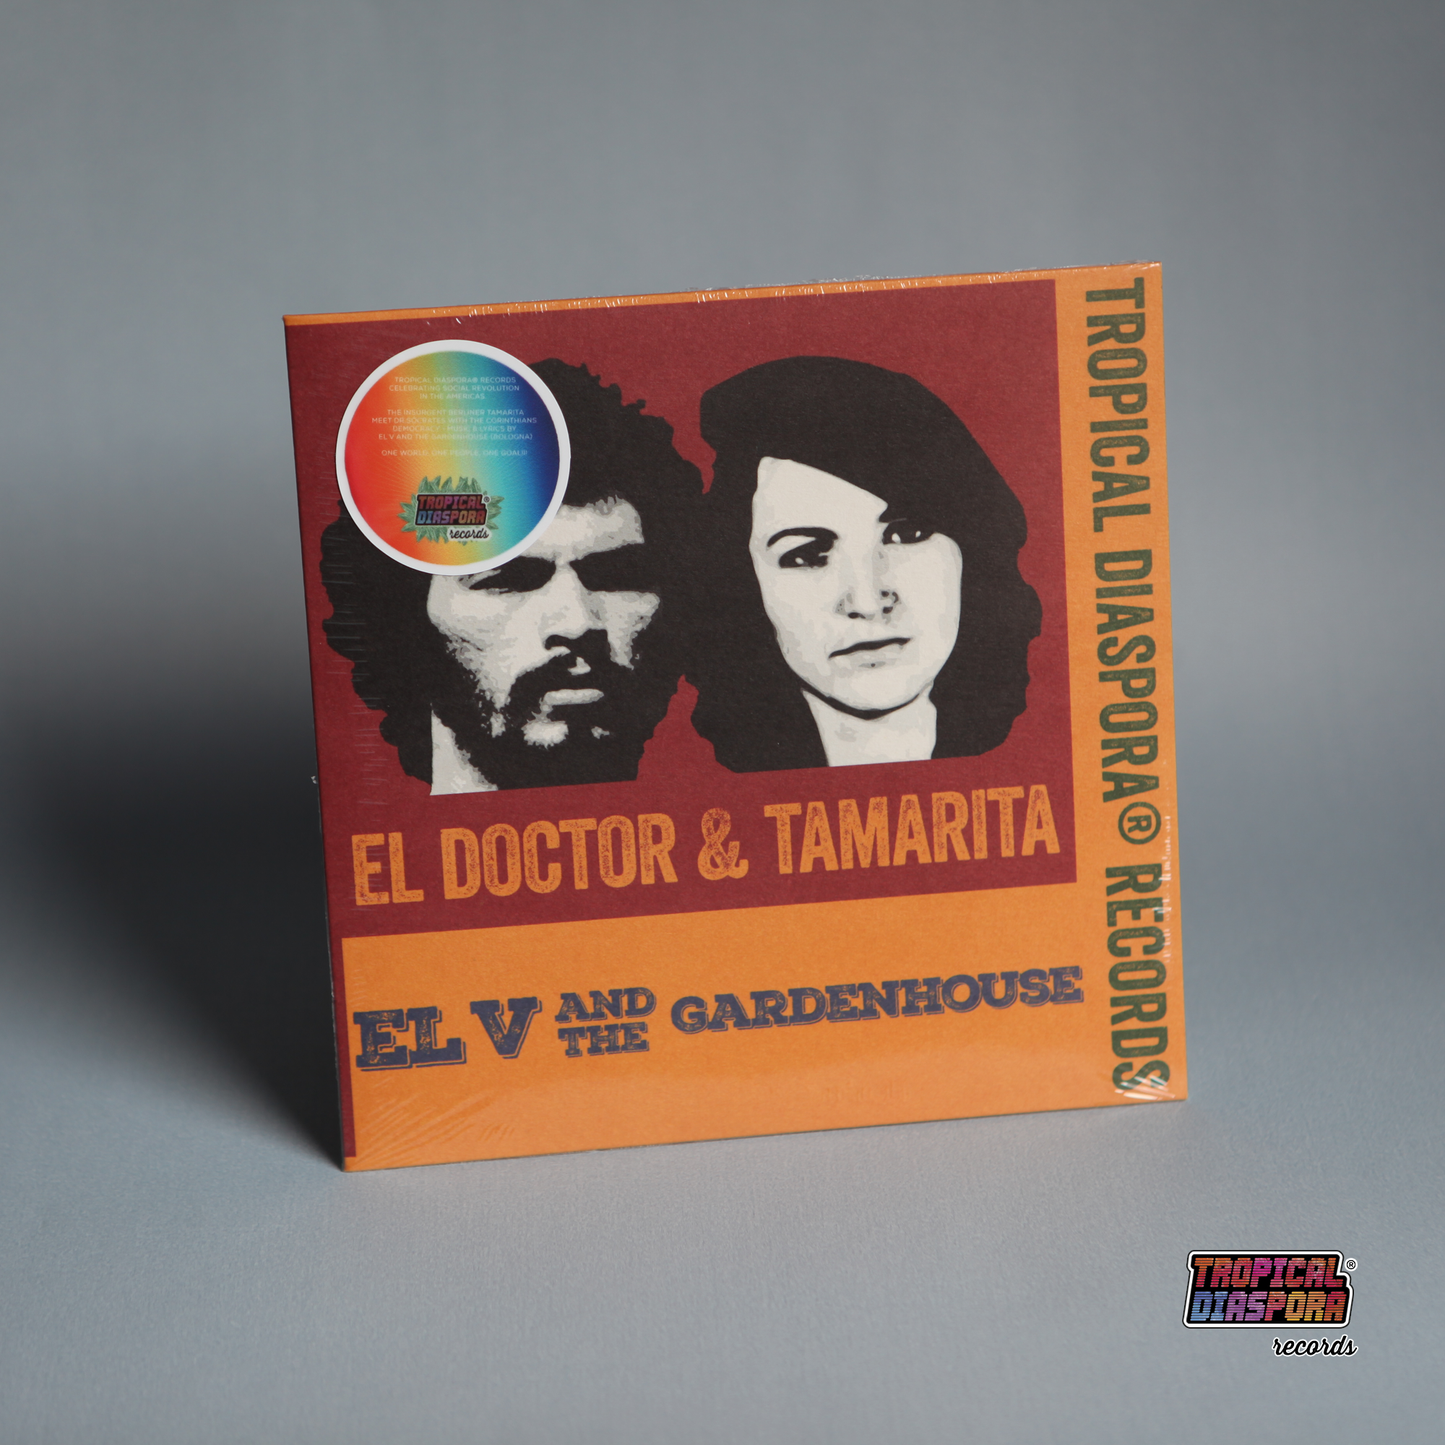 El Doctor & Tamarita ☆ by El V